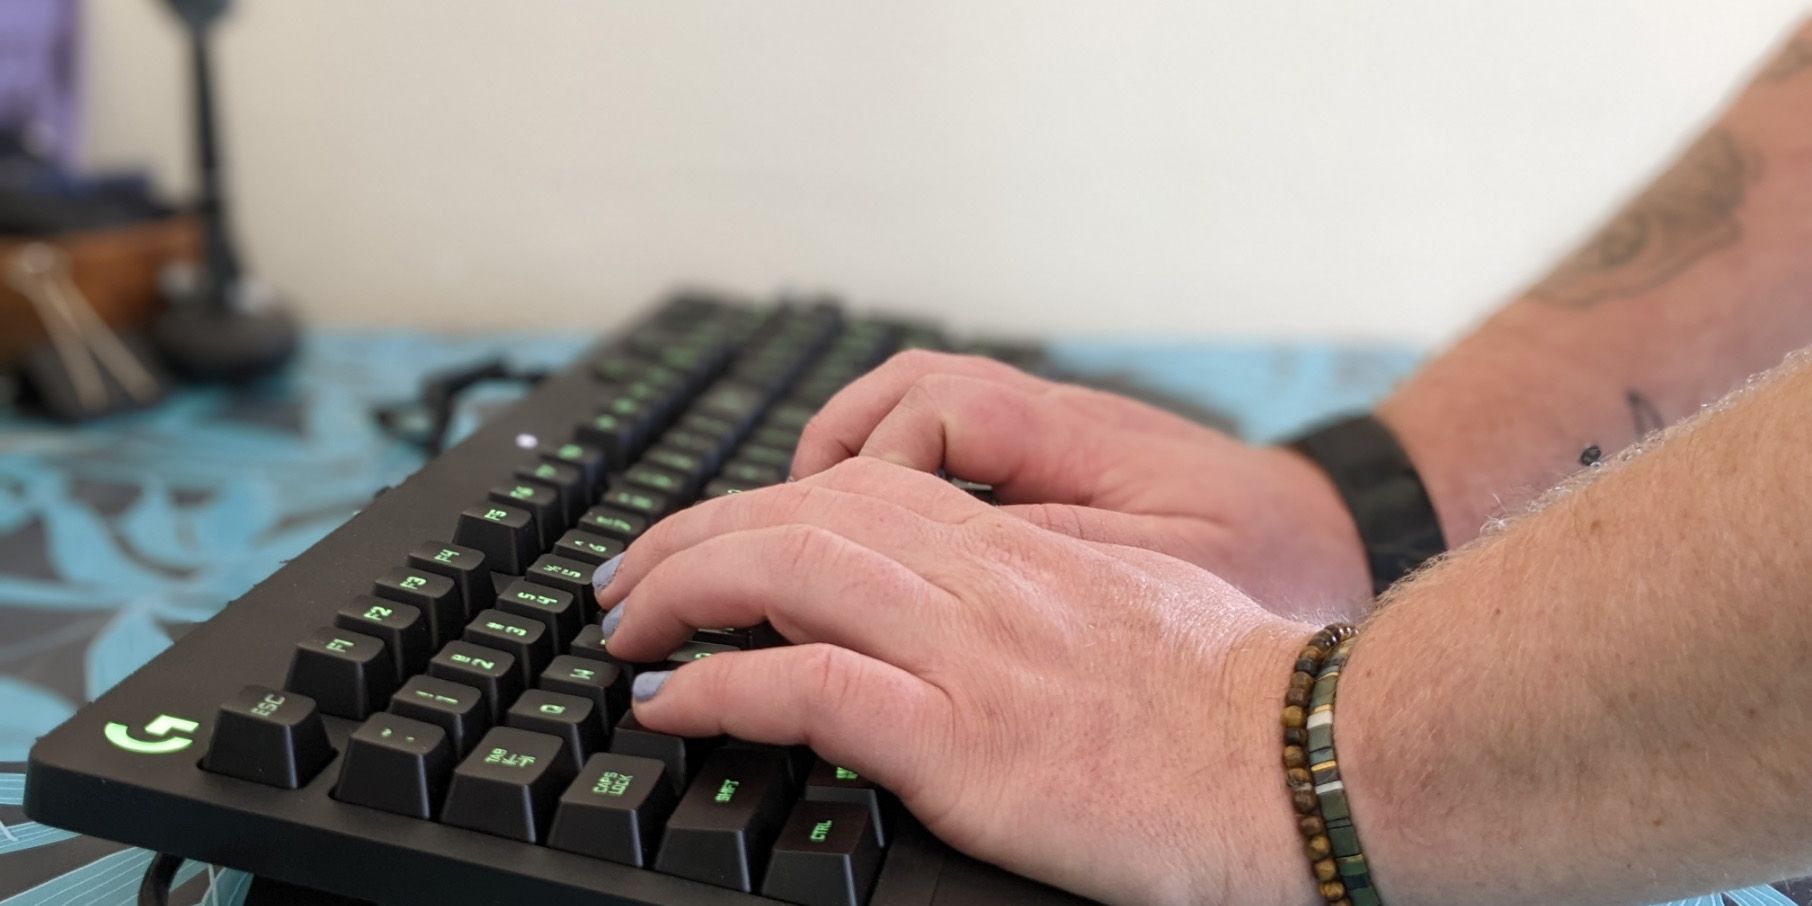 Logitech G213 Gaming Keyboard being used 